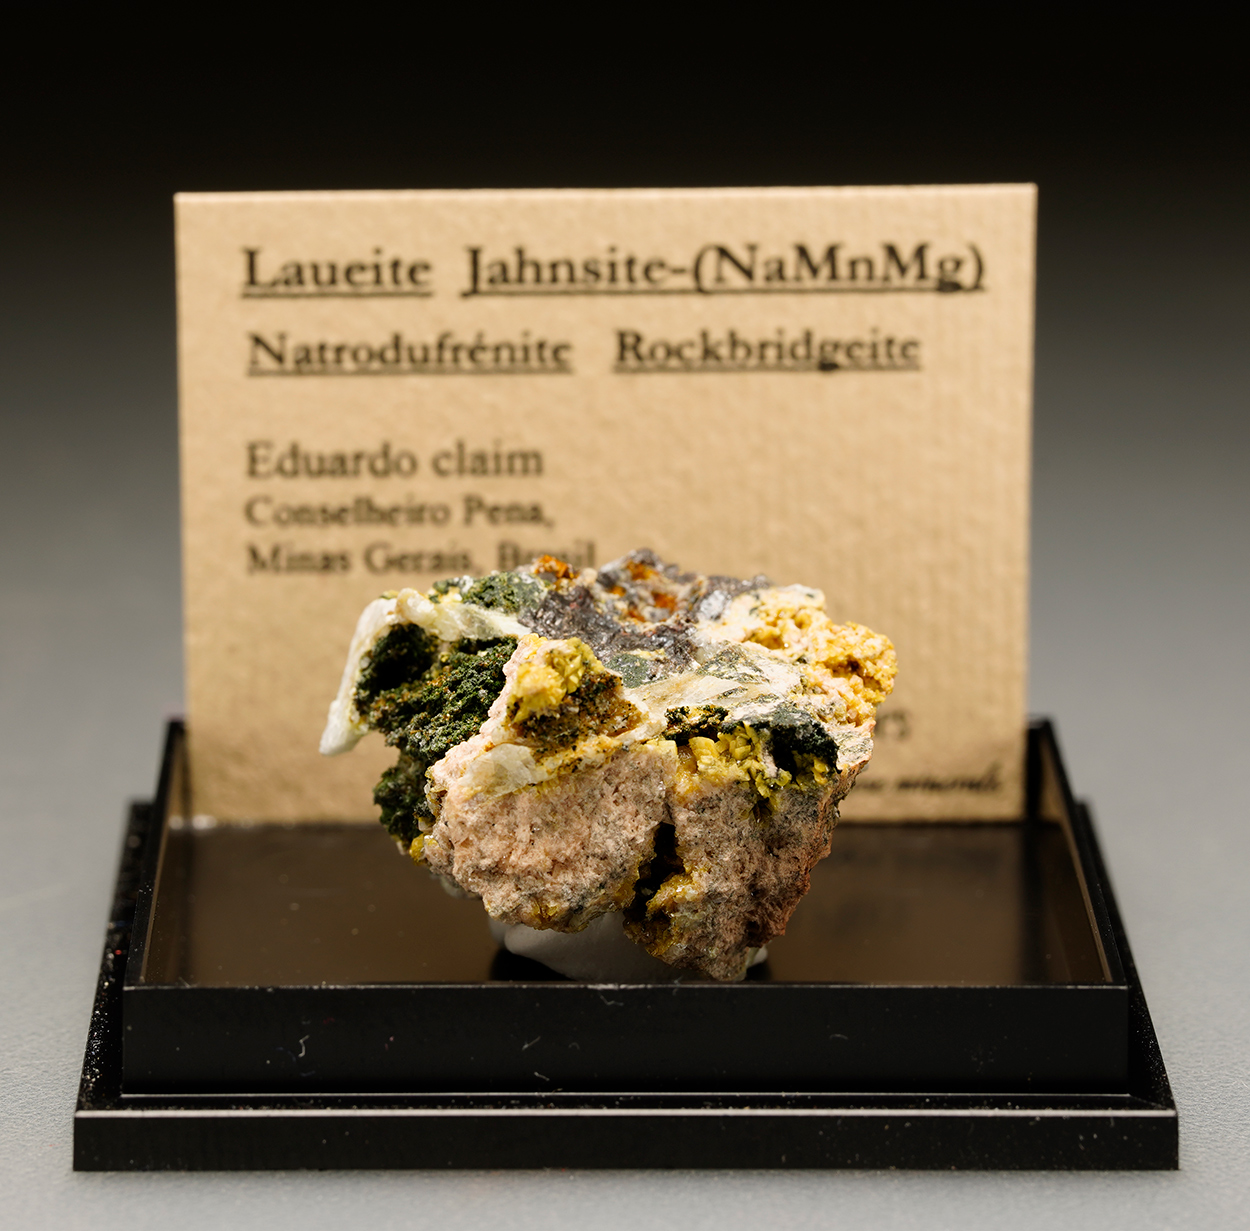 Jahnsite-(NaMnMg) Jahnsite-(CaMnMg) Laueite Hureaulite & Natrodufrénite